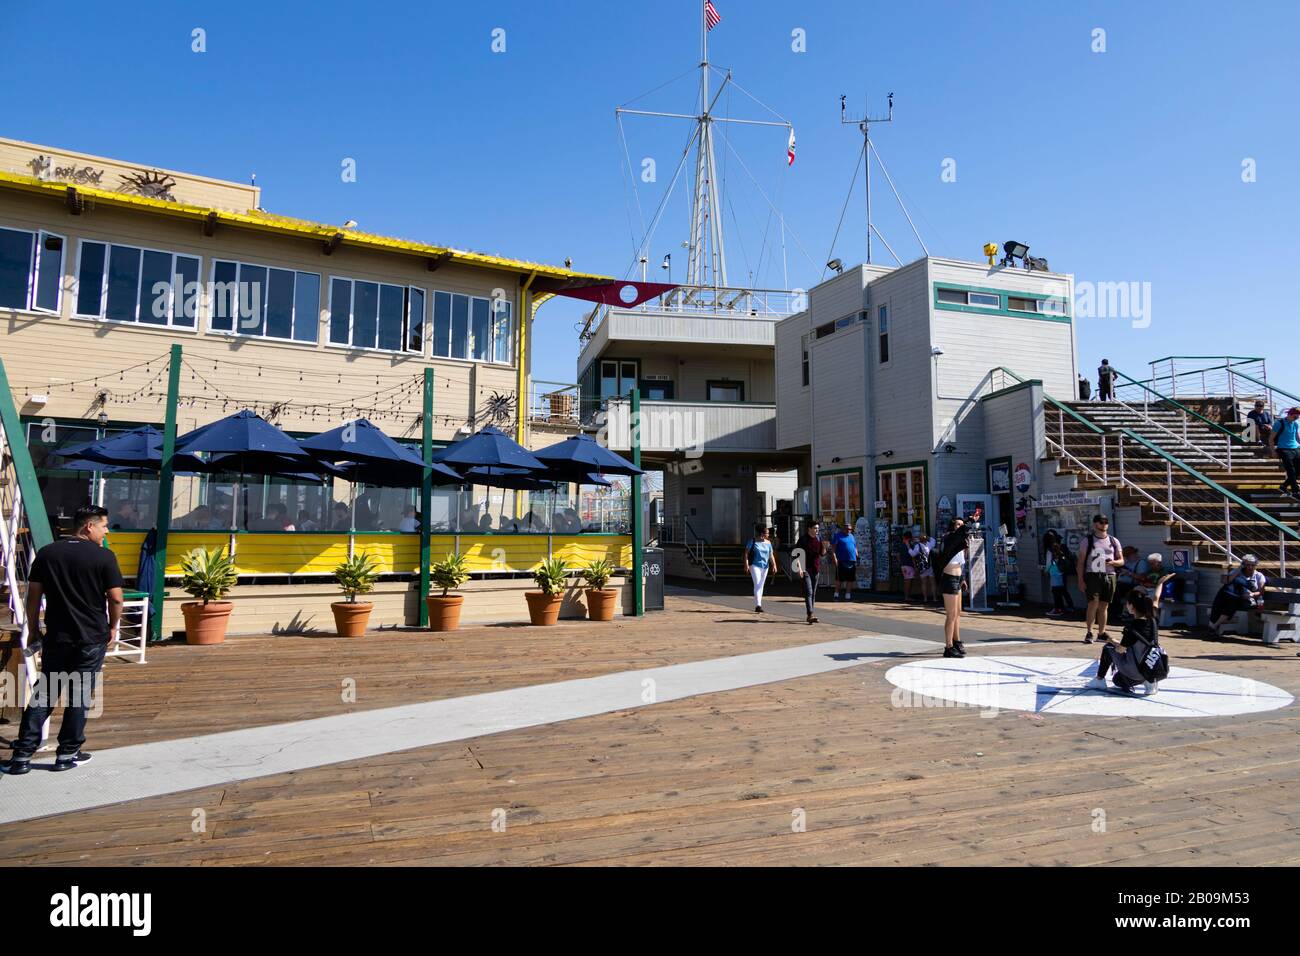 Touristen am Ende des Santa Monica Piers. Mariasol mexikanisches Restaurant und Hafenamt. Kalifornien, Vereinigte Staaten von Amerika Stockfoto